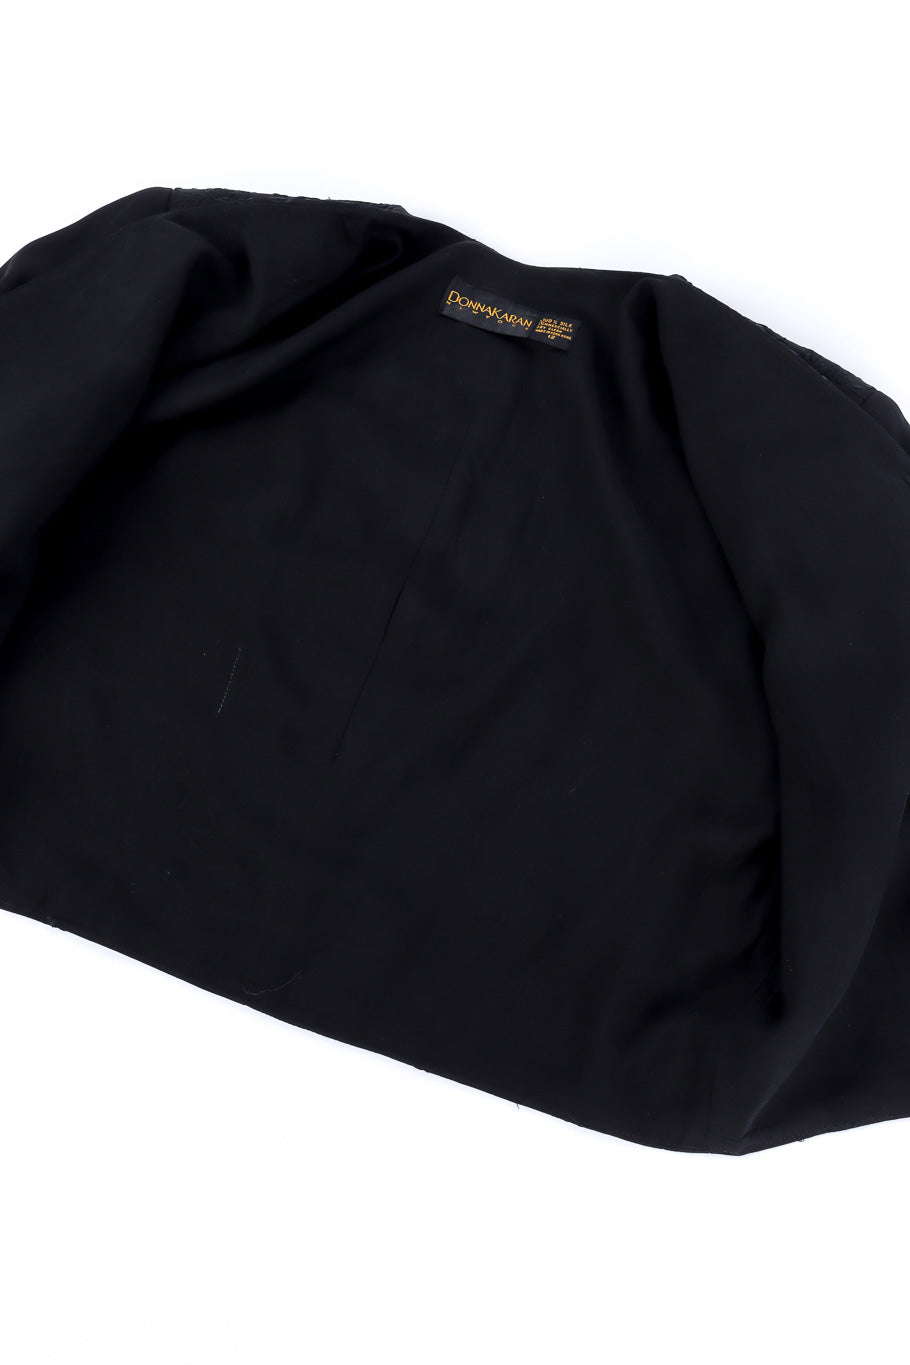 Jacket and skirt set by Donna Karan jacket flat lay open @recessla